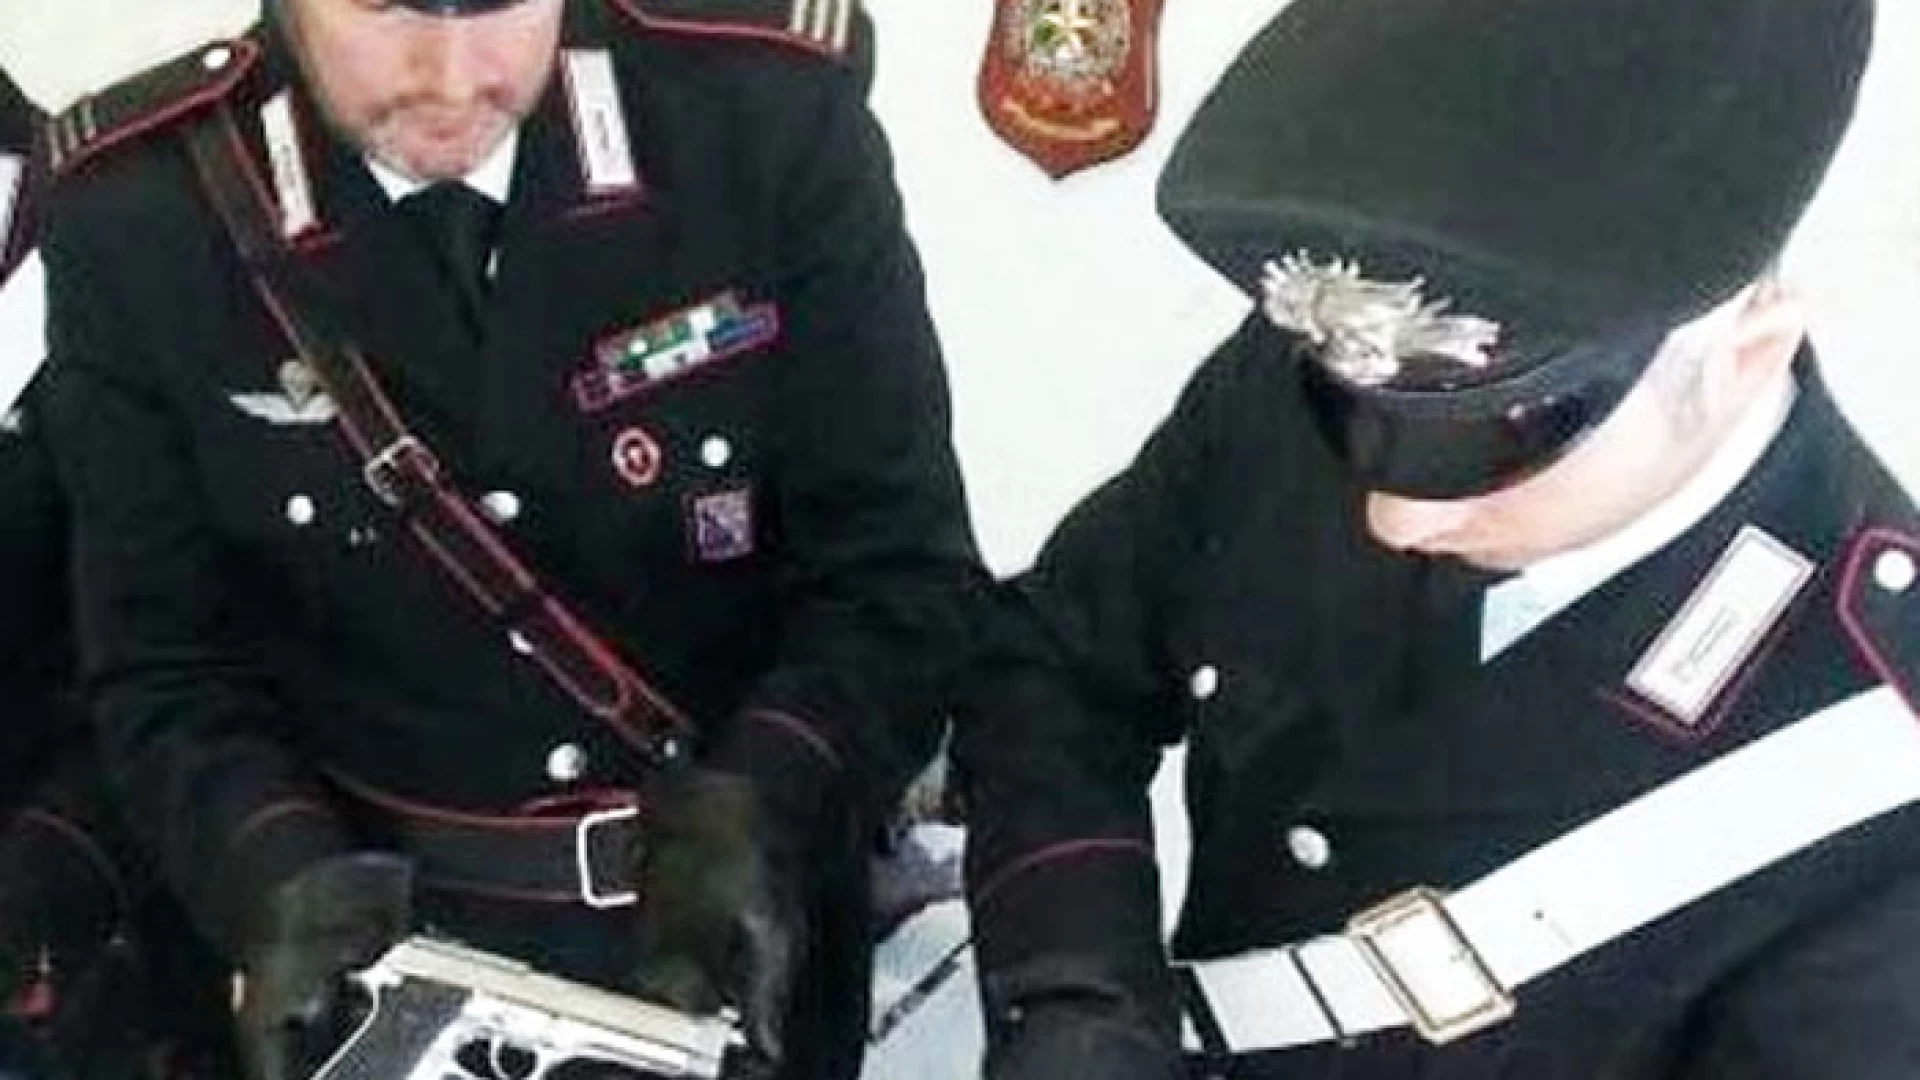 Sesto Campano: Detenzione illegale di armi e munizioni, 50enne denunciato dai Carabinieri. Sotto sequestro due pistole.